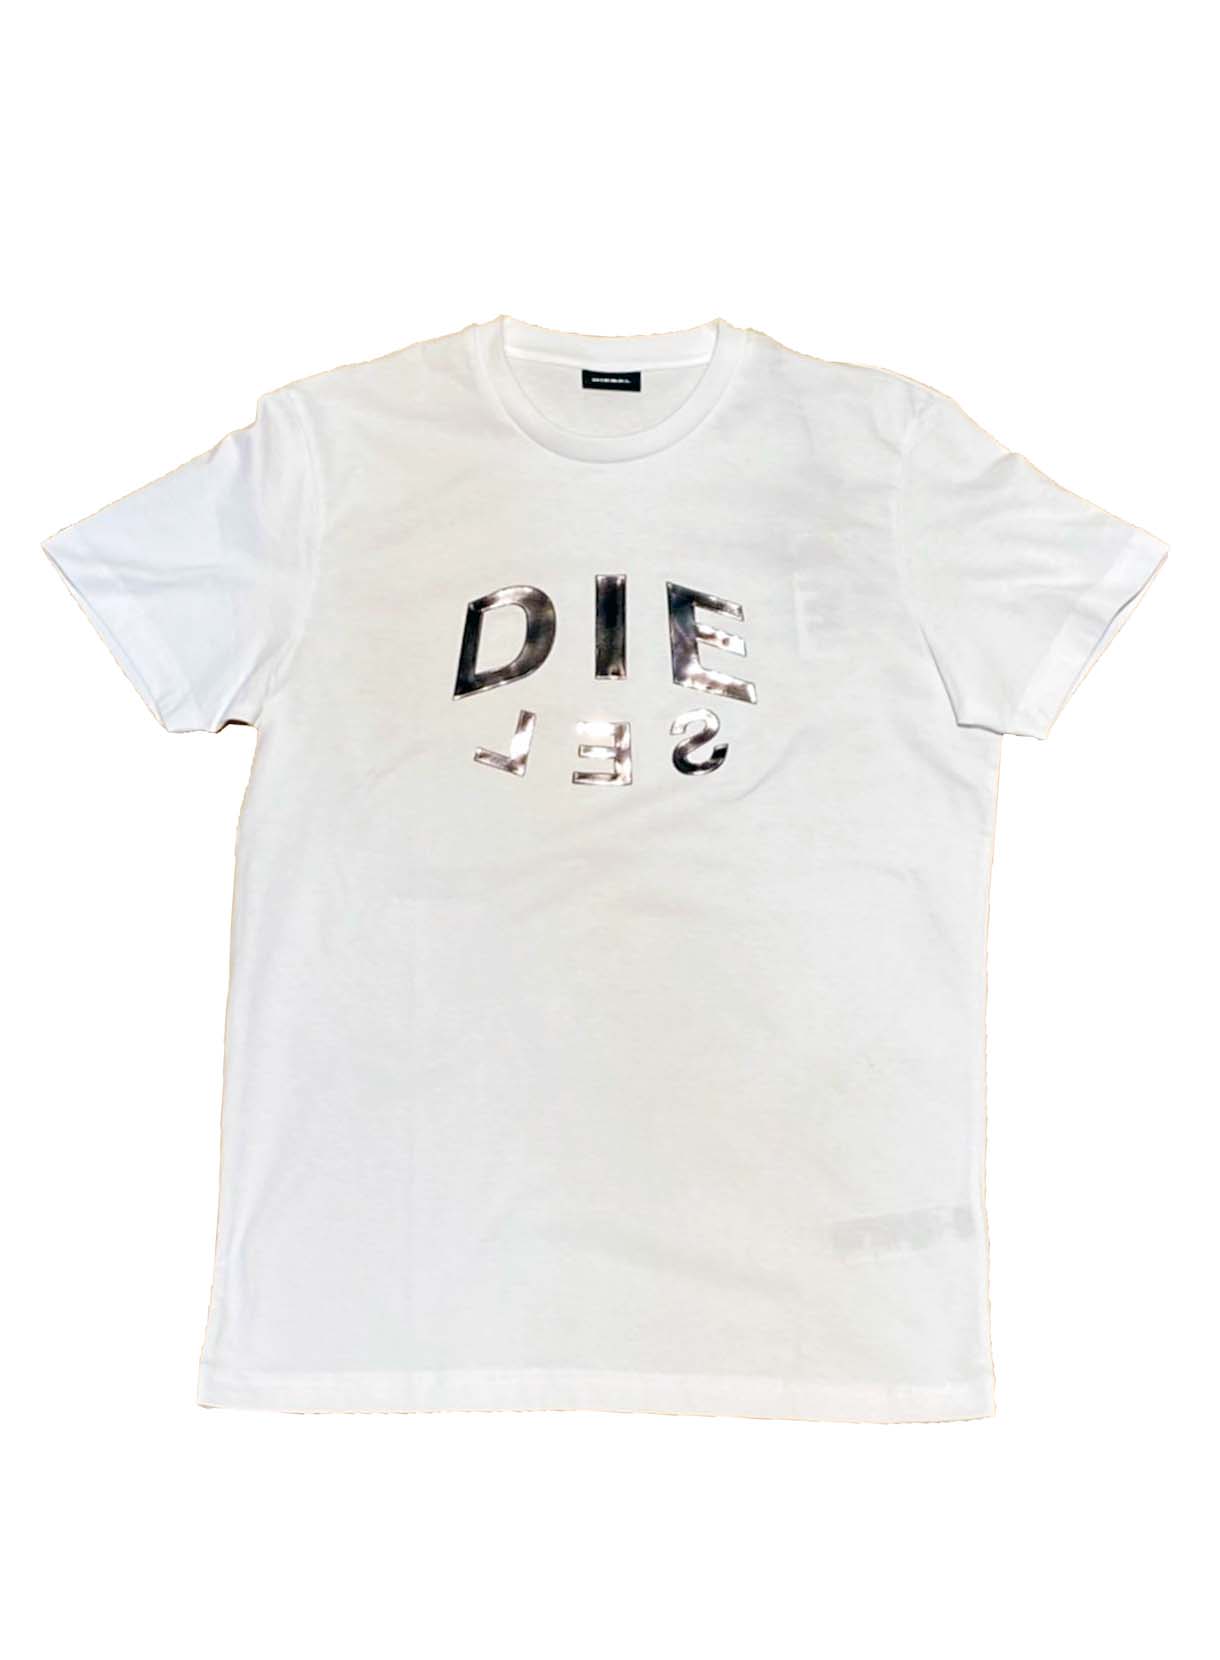 【メンズ】DIESEL 2021NEW メタリックロゴTシャツ – リレーション公式ホームページ